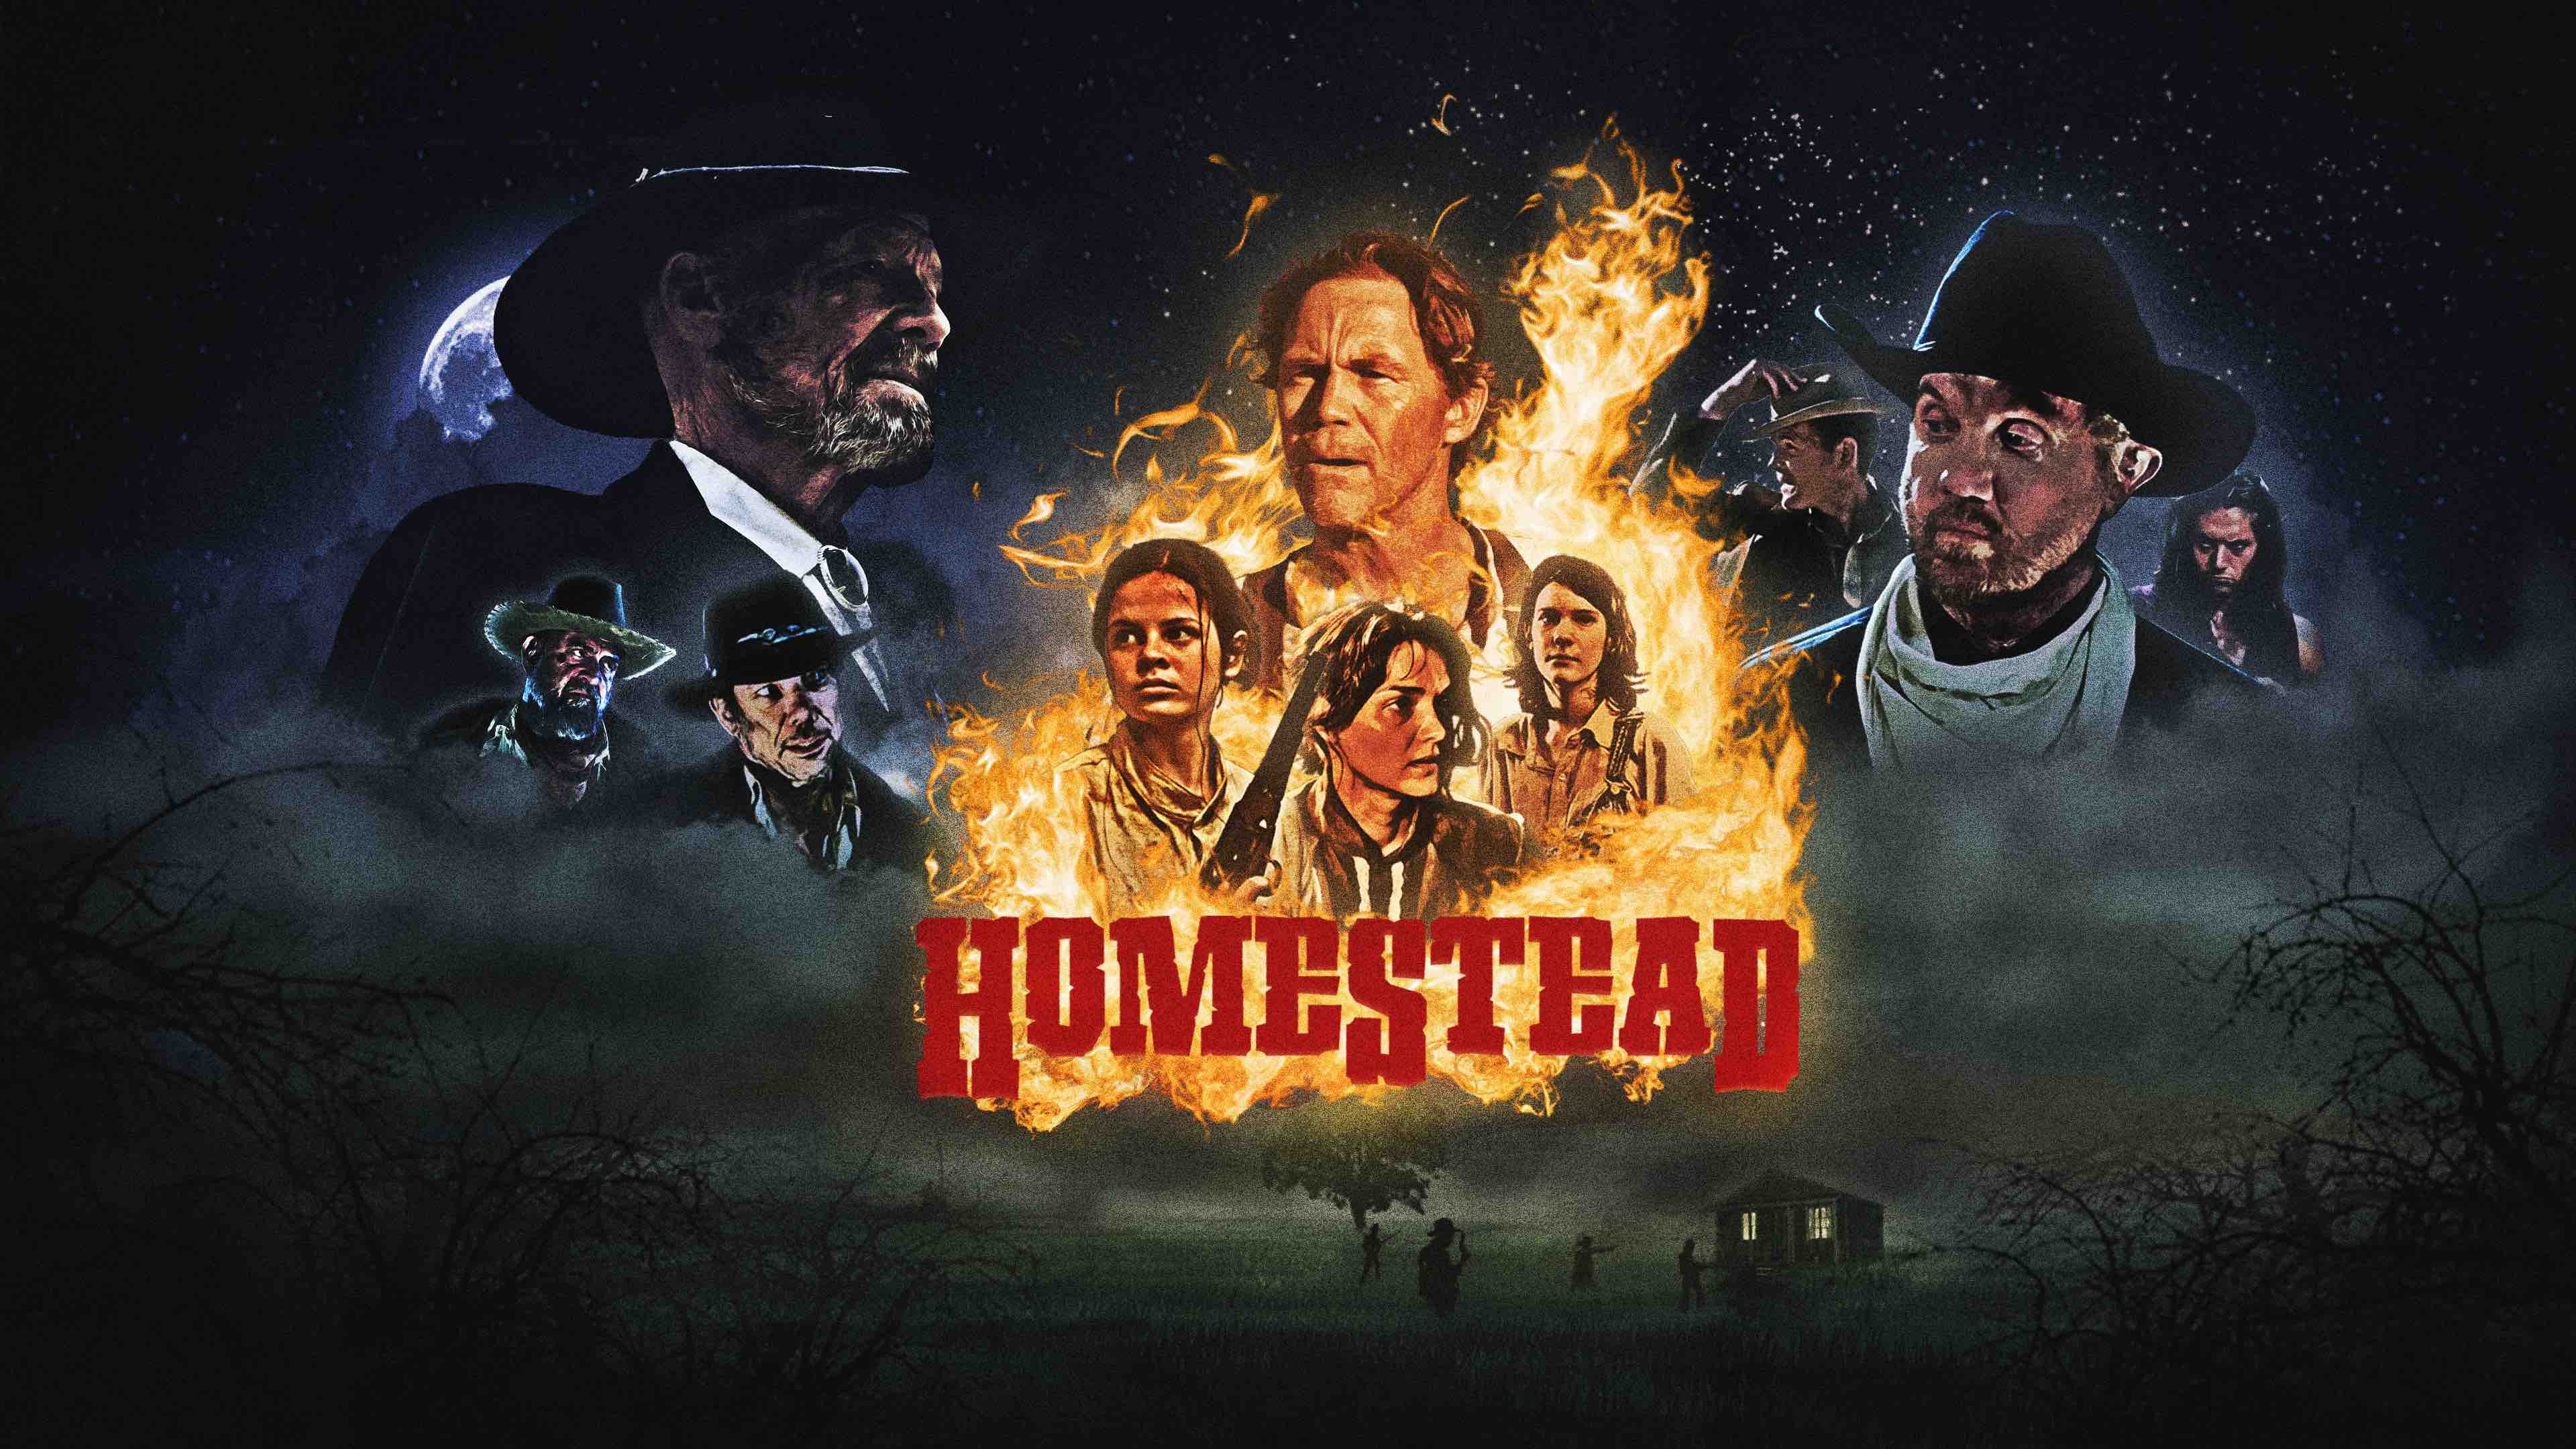 Homestead Movie Film Western Thriller 2023 Poster 2 